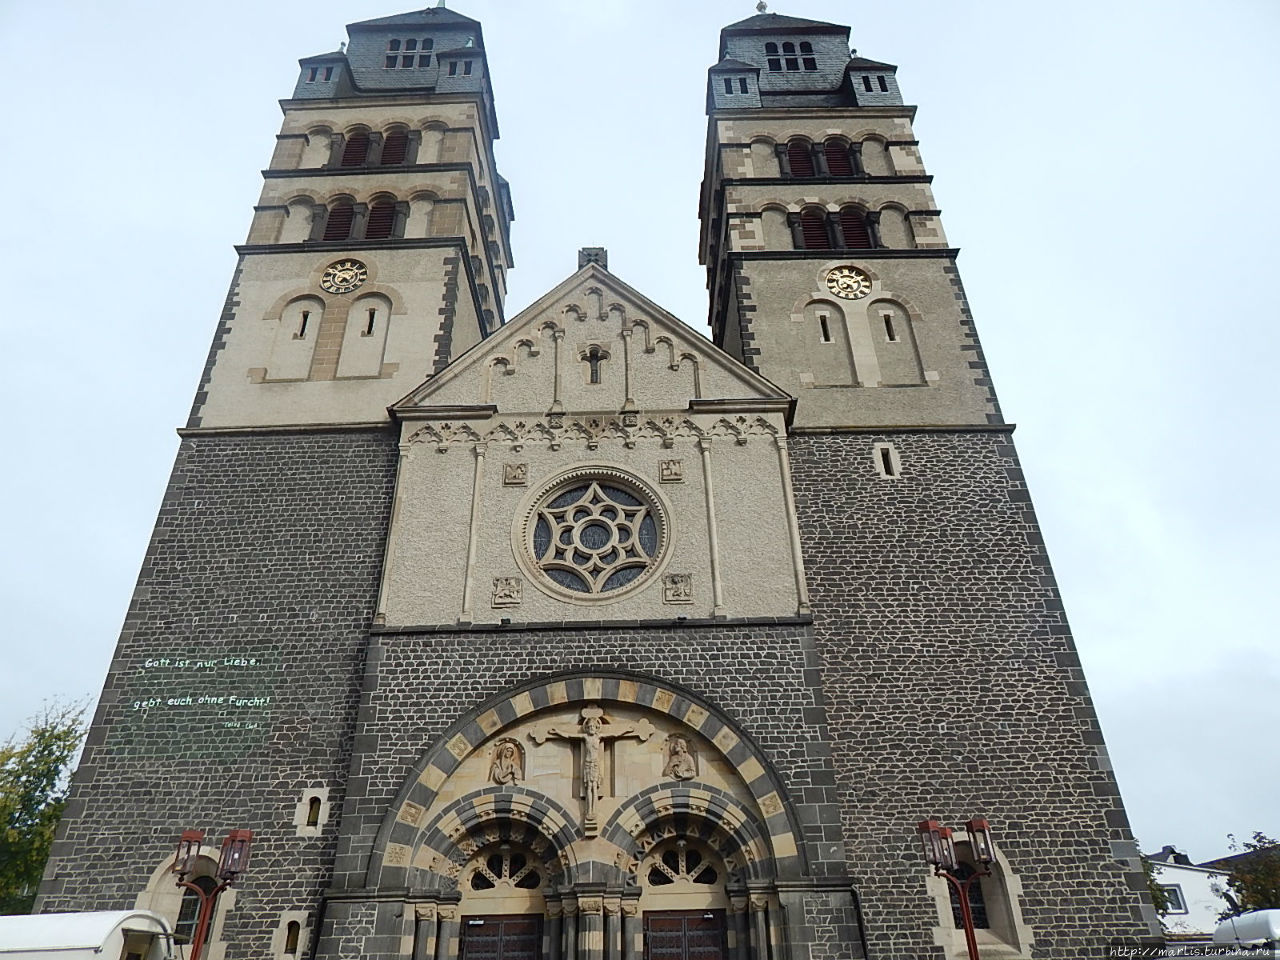 Католическая Церковь Сердца Христова, расположена рядом с замком. Майен, Германия